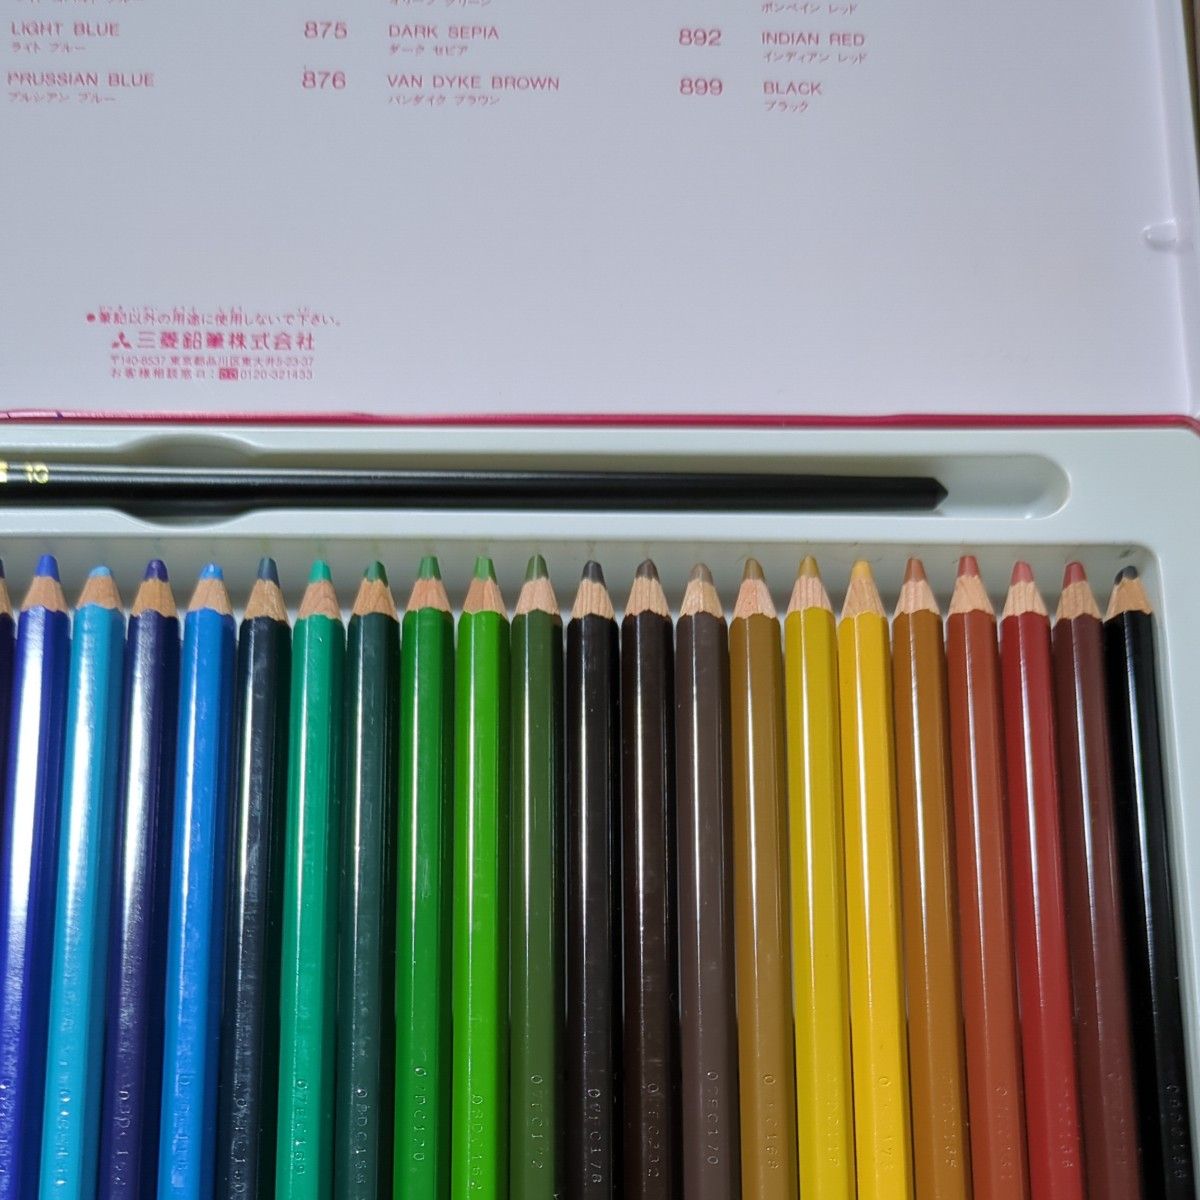 36色　uni　ウォーター カラー　水彩 色鉛筆　三菱鉛筆　 色鉛筆　WATER COLOR　ユニ　水彩筆付